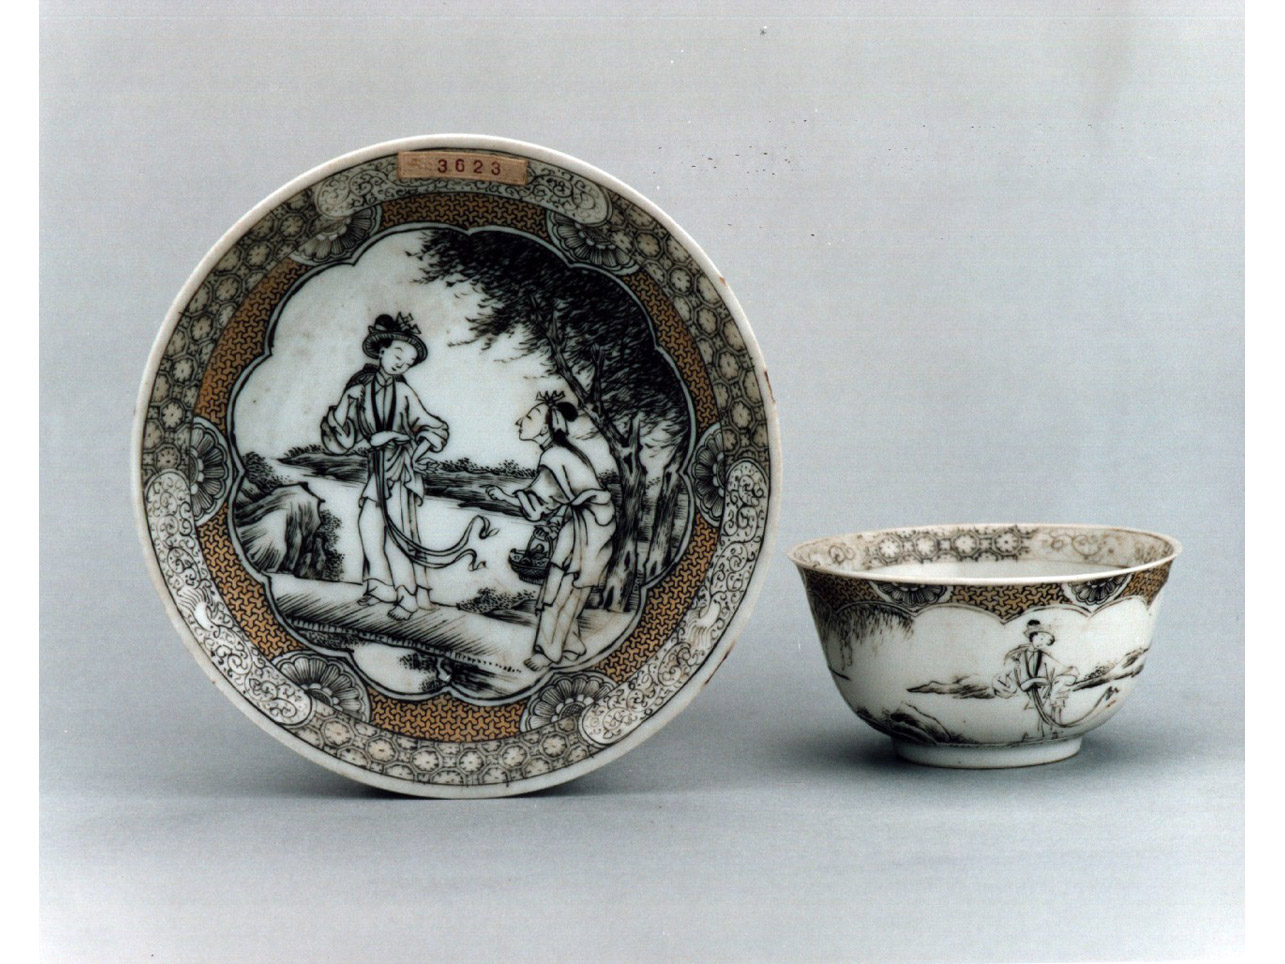 paesaggio con figure orientali/ motivi decorativi vegetali stilizzati (tazzina) - manifattura cinese (sec. XVIII)